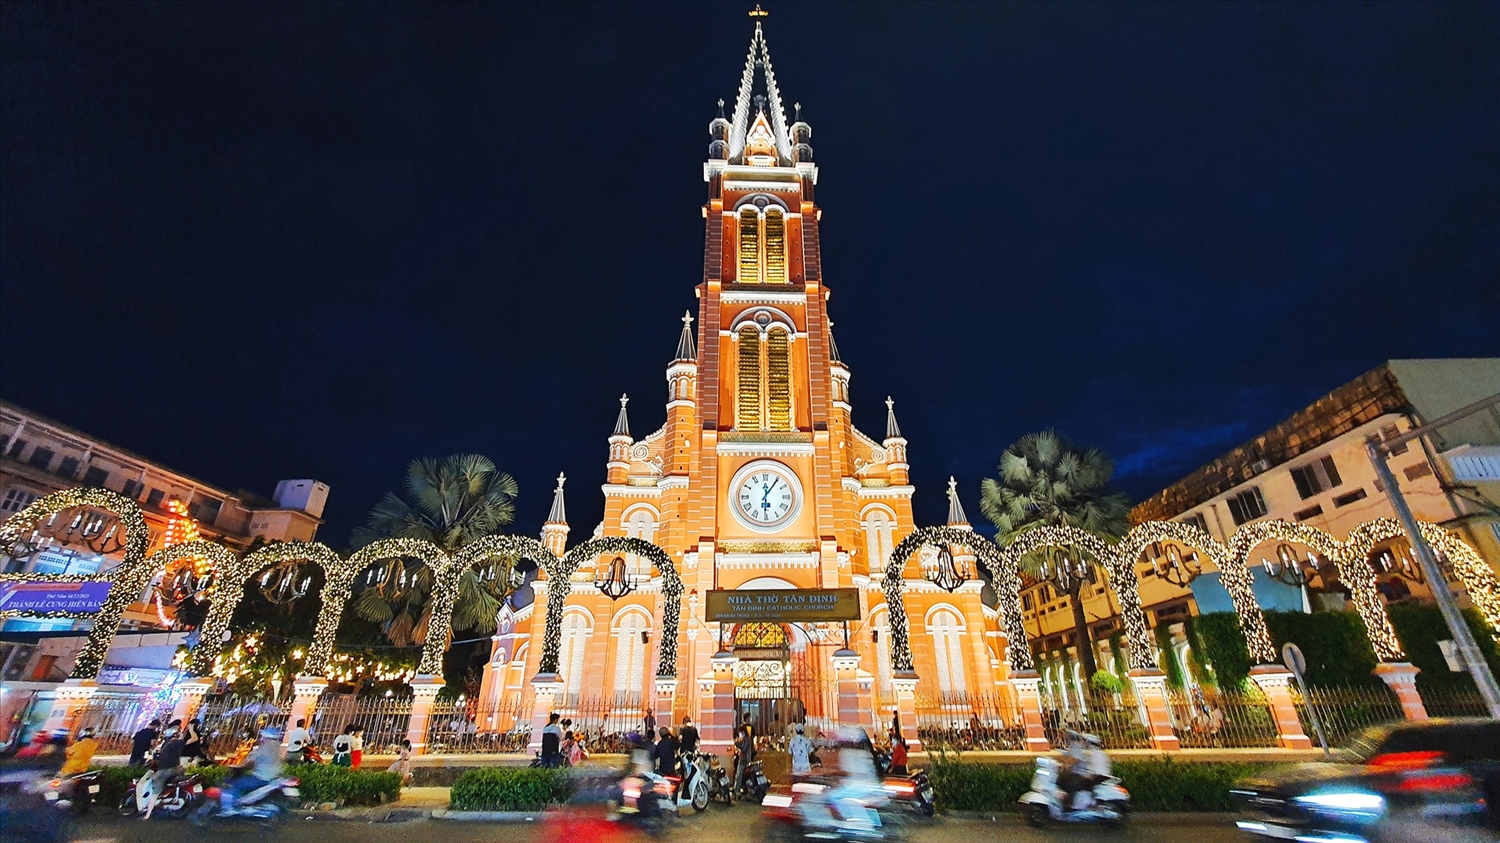 Nhà thờ Tân Định, một trong những nhà thờ lớn và nổi tiếng tại TP. Hồ Chí Minh thu hút nhiều người đến vào dịp lễ Giáng Sinh mỗi năm